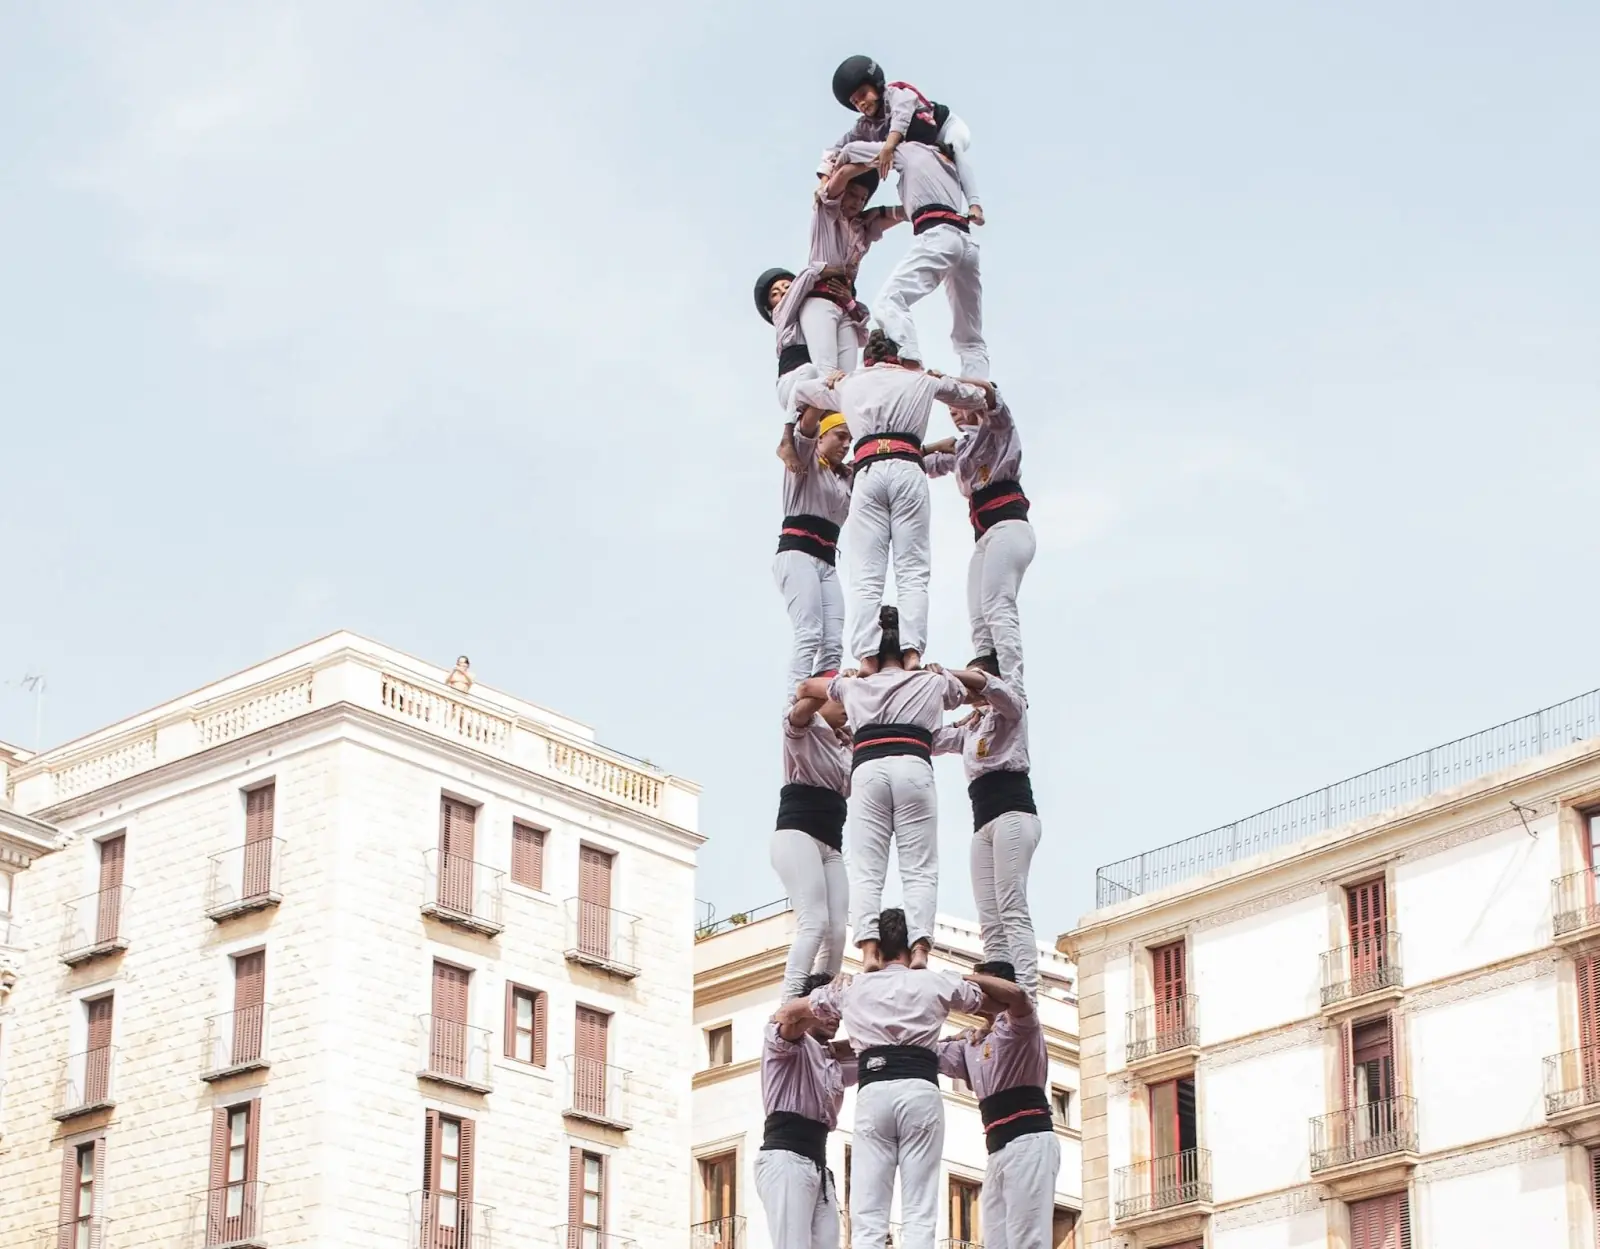 Human tower performance at La Mercè 